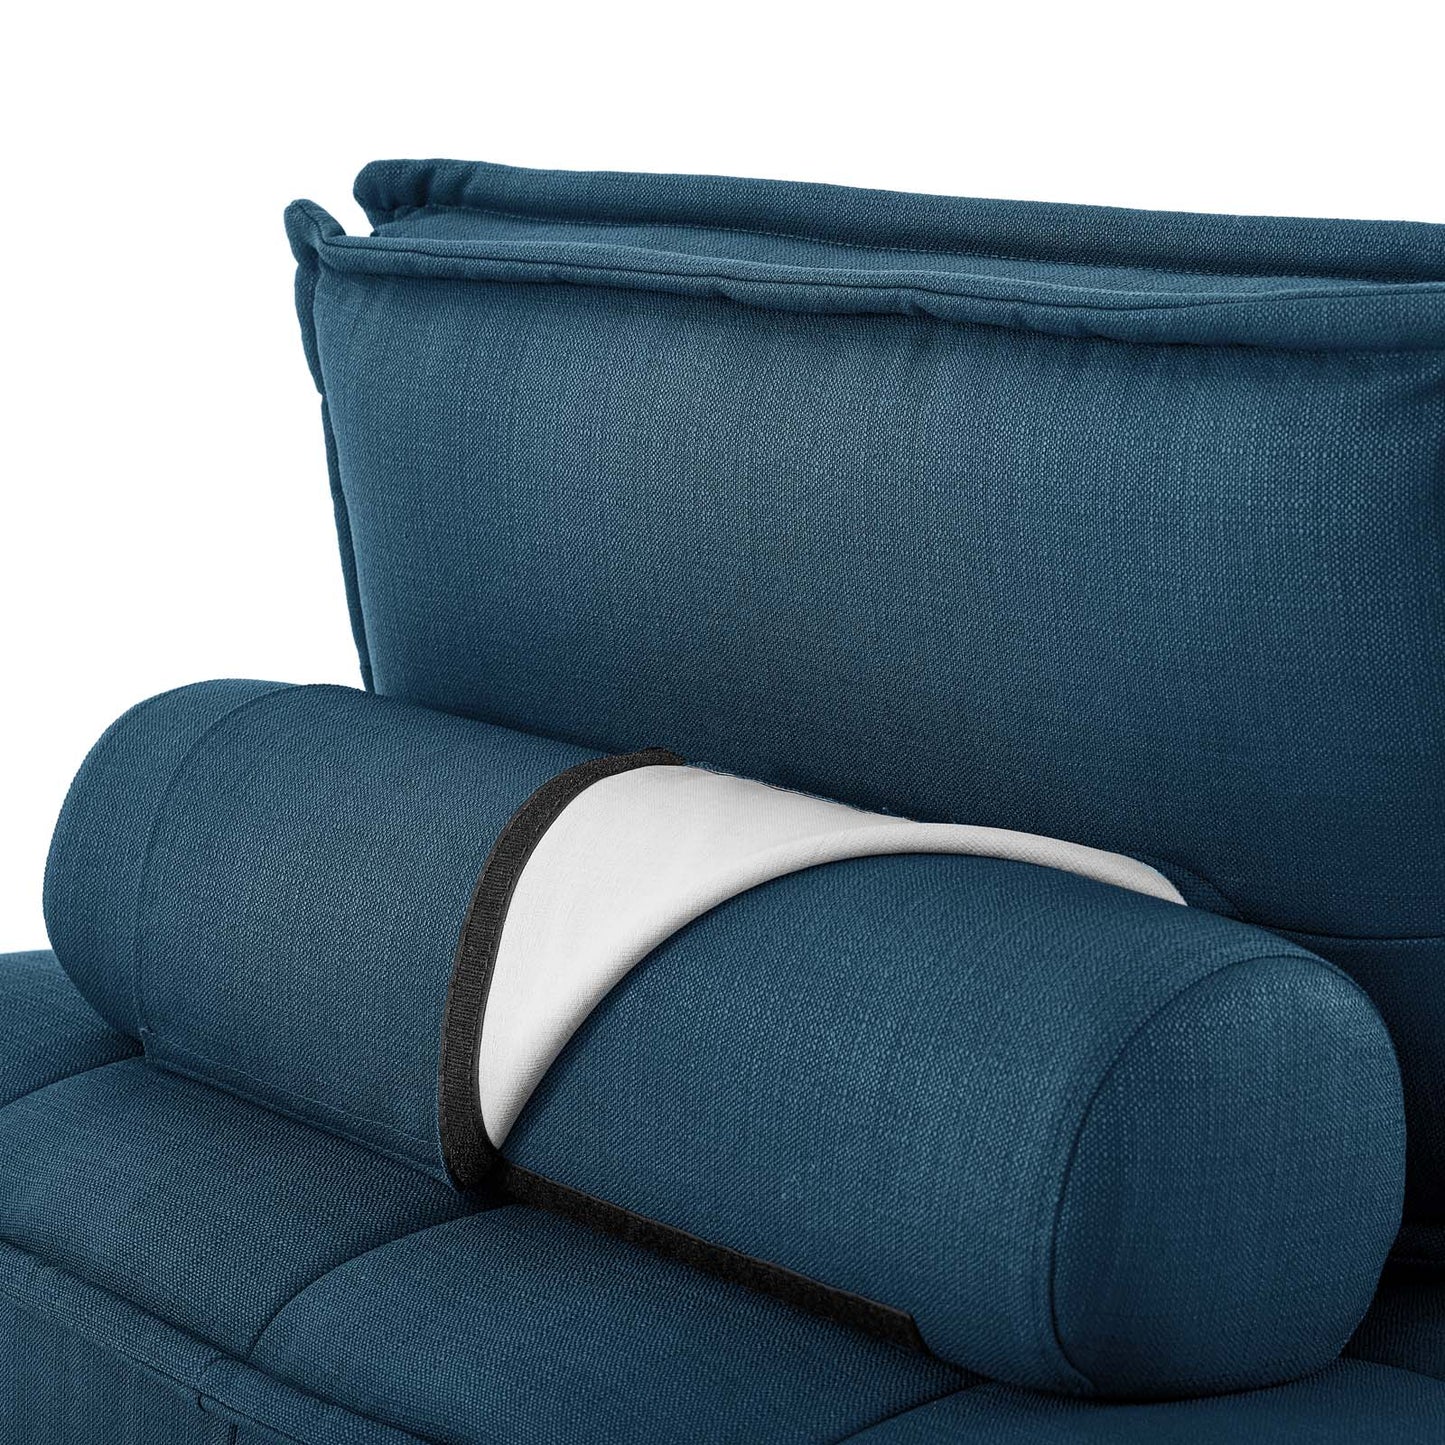 Saunter Tufted Fabric Armless Chair Azure EEI-4725-AZU